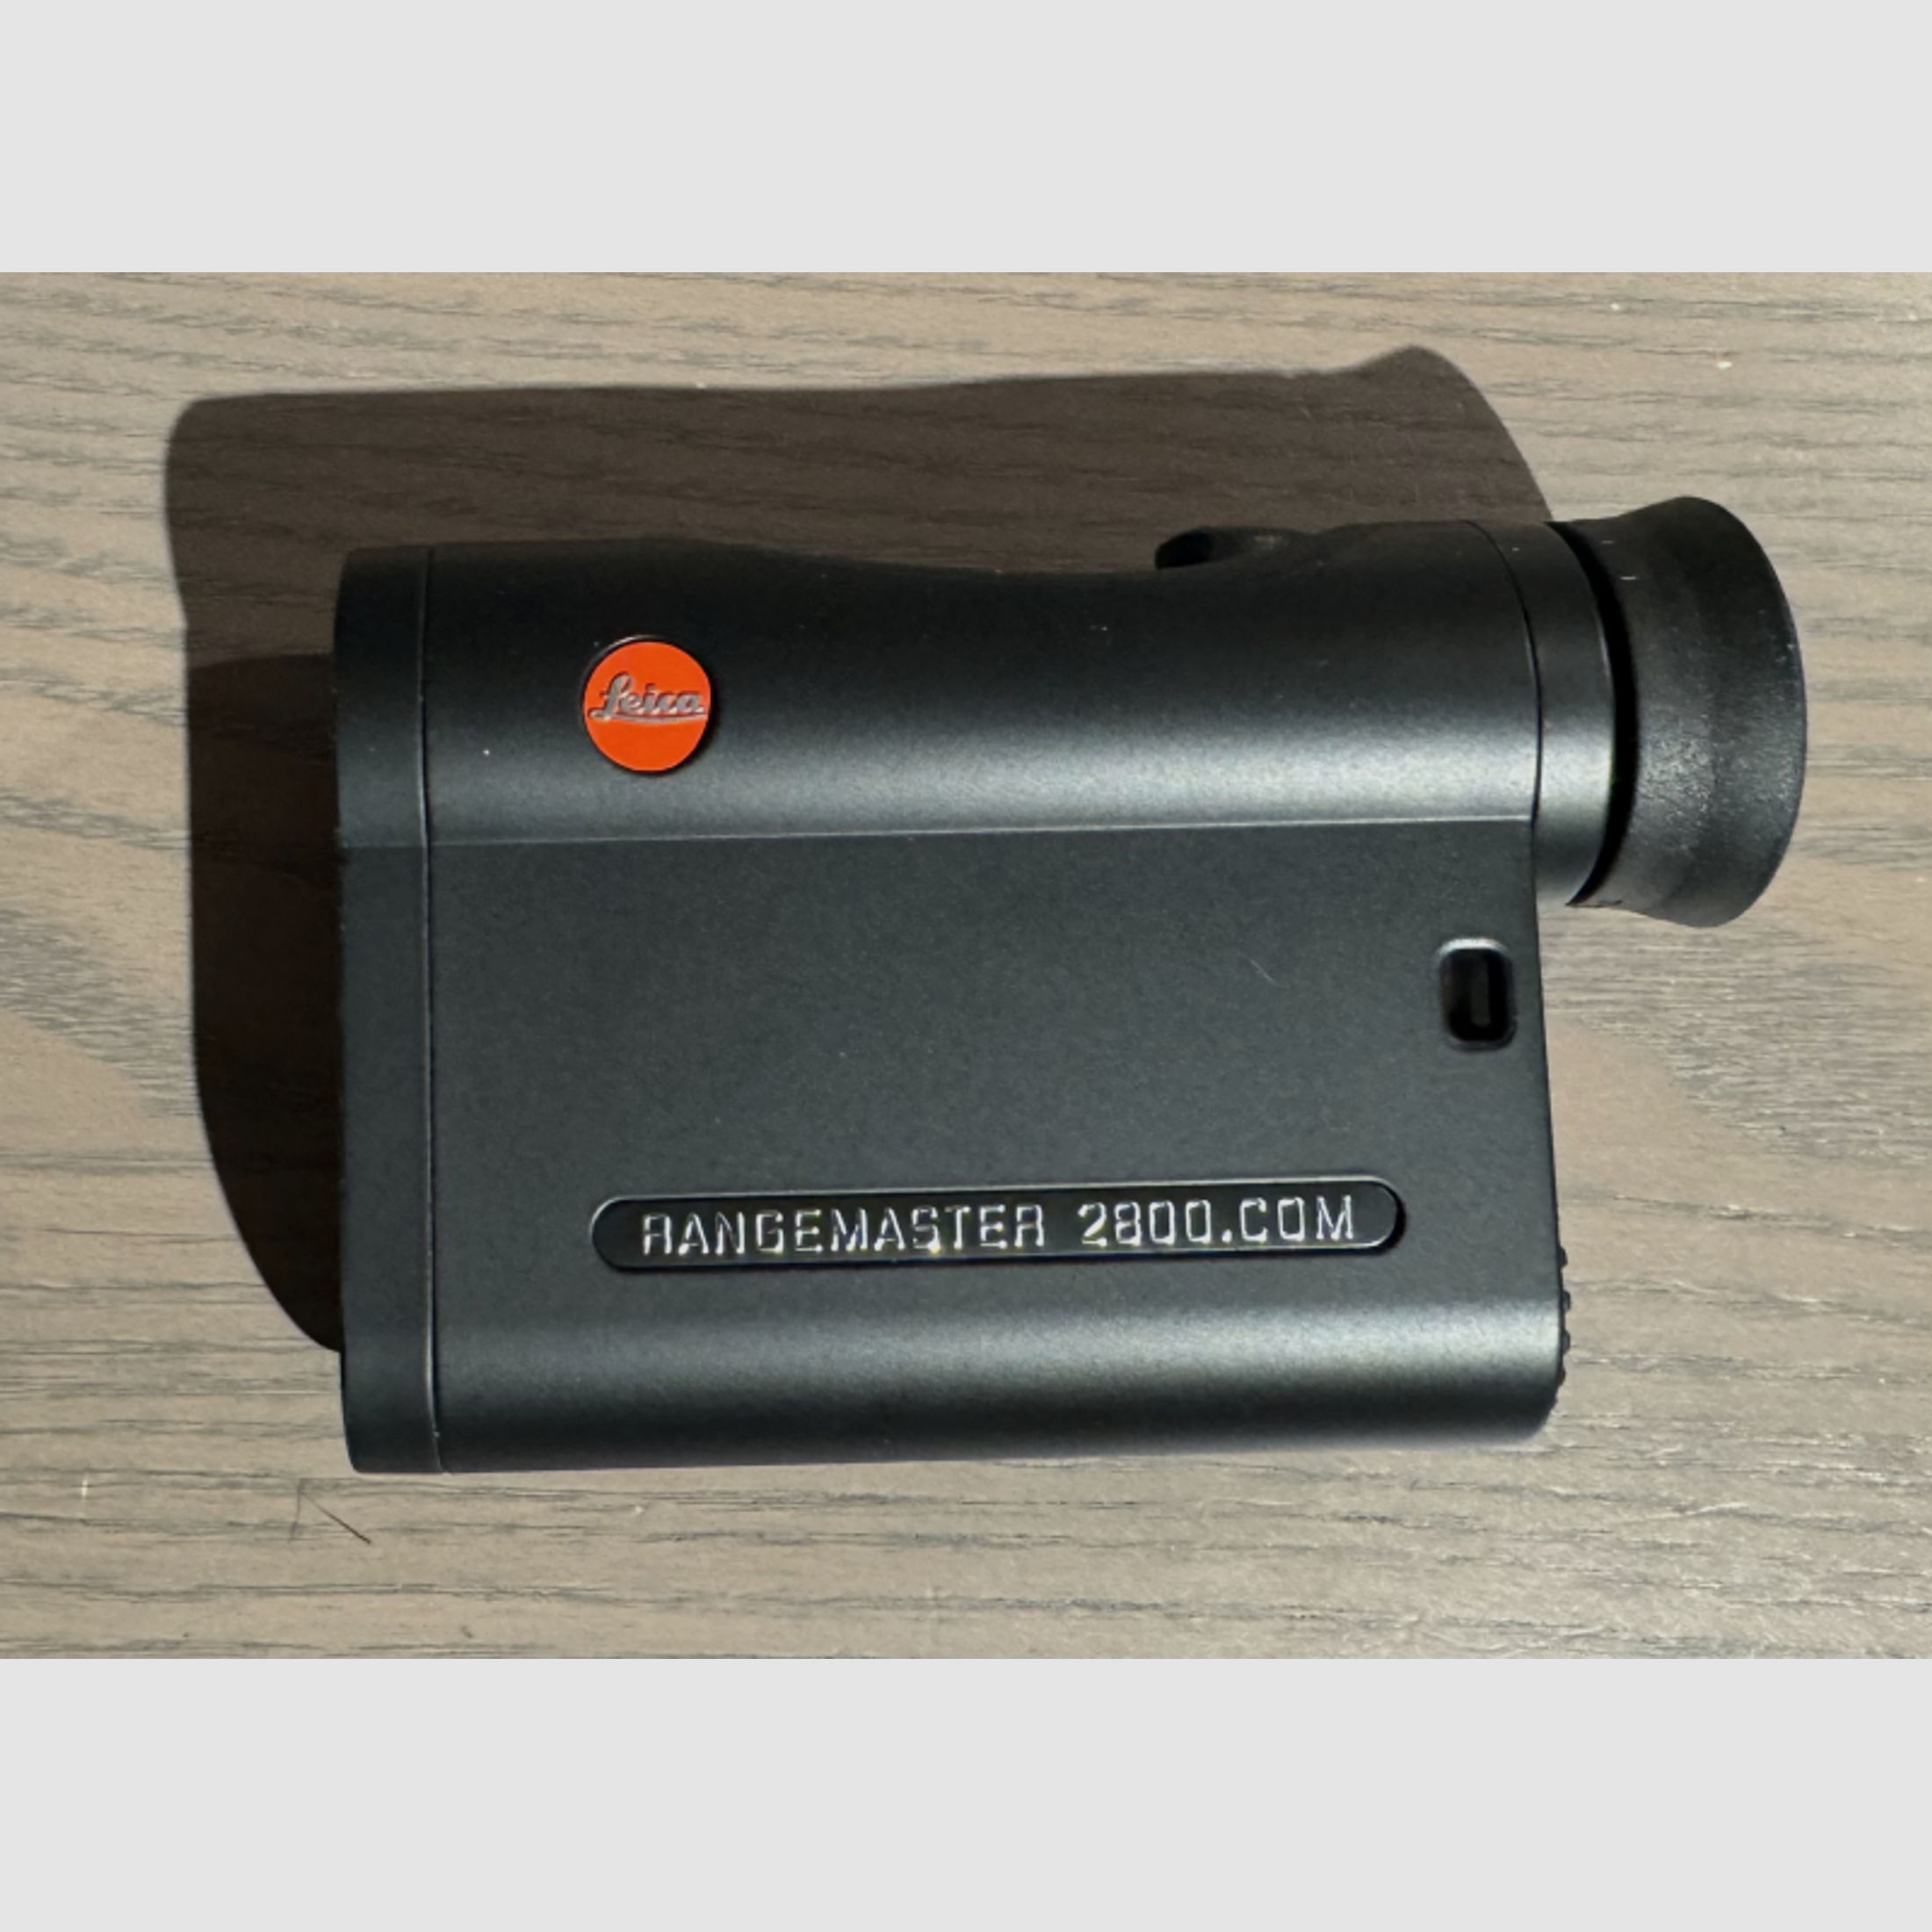 Leica Rangemaster CRF 2800.com Entfernungsmesser